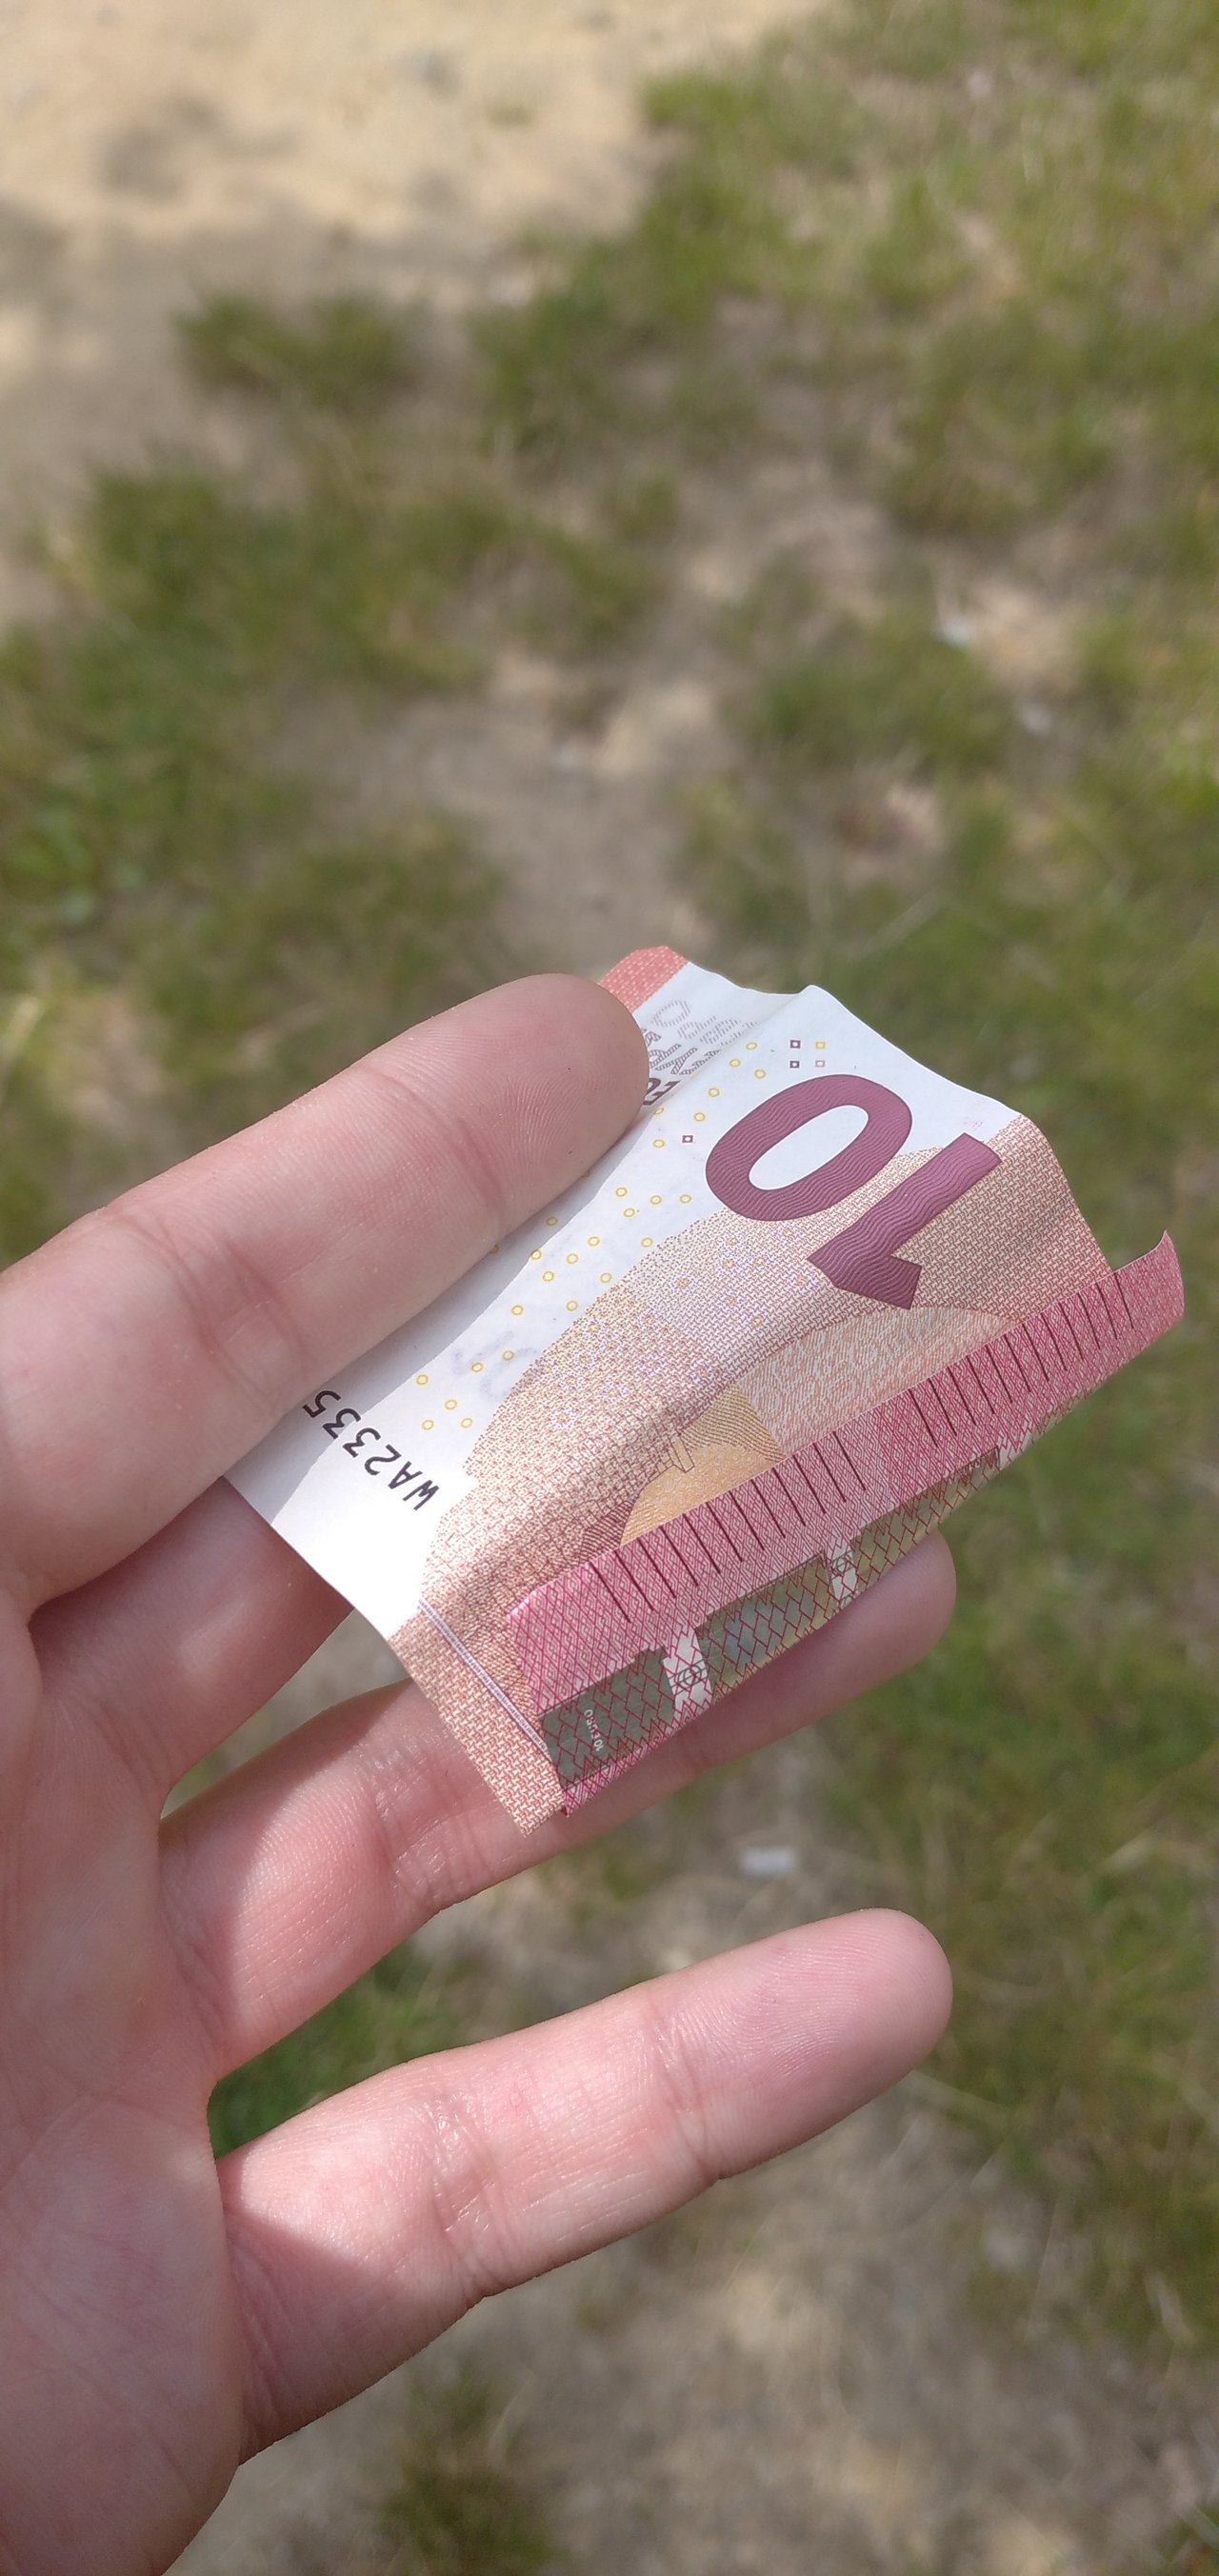 Trosku dávnejšie som si vizualizoval 10€ a dnes pred par minútami nájdem toto na zemi. Nádhera. 